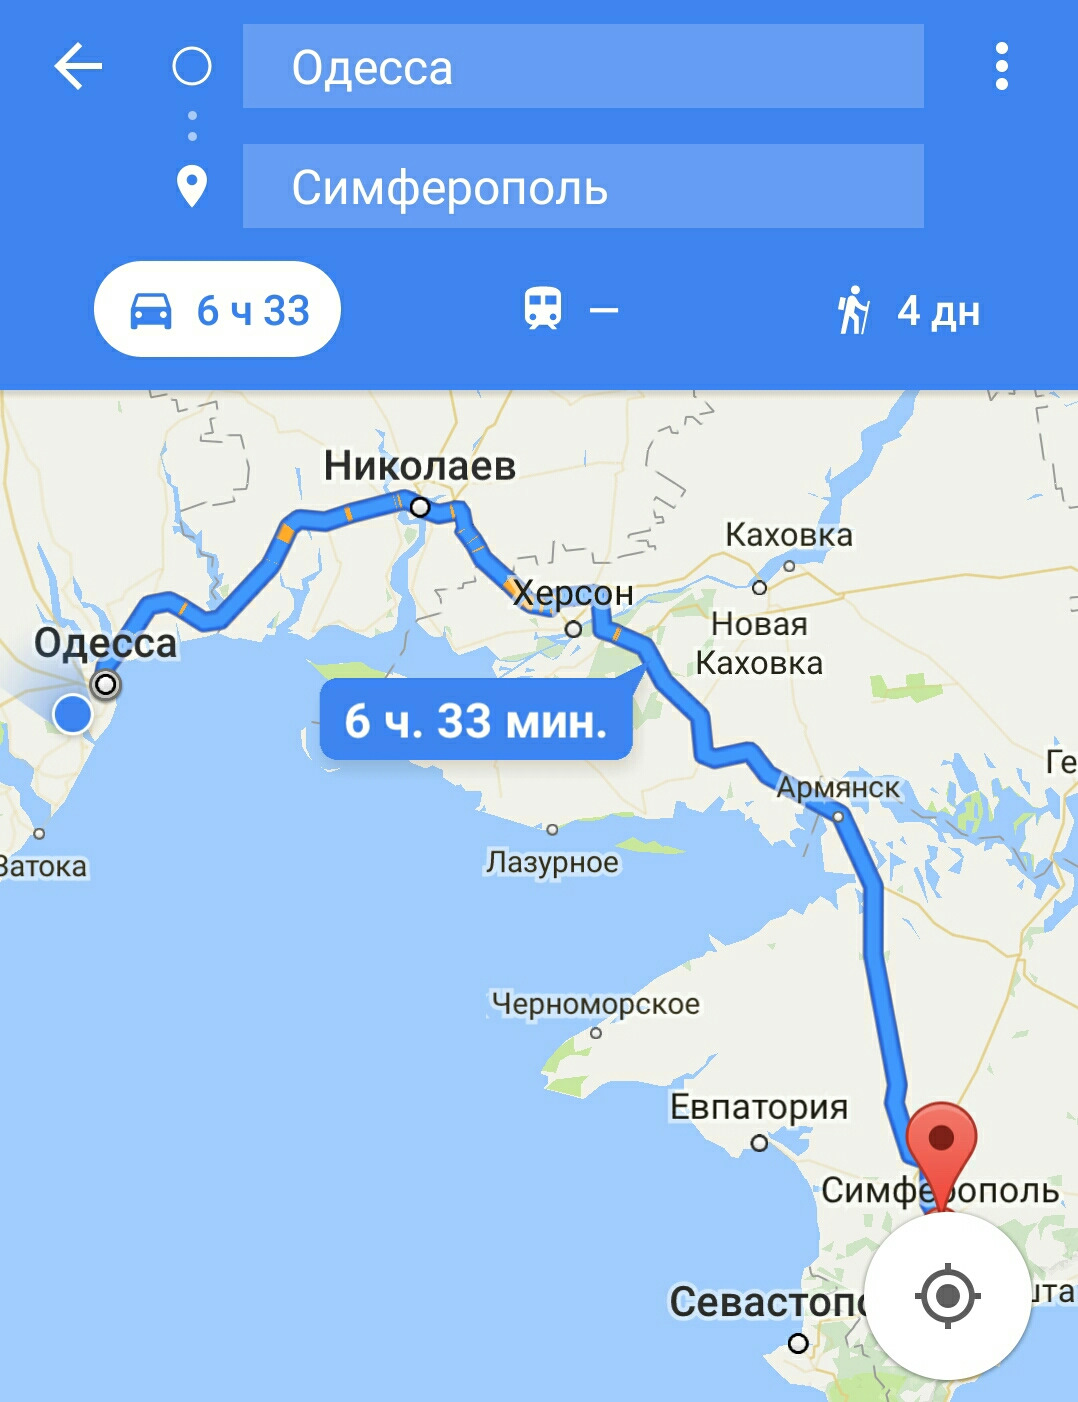 Одесское доехать. Расстояние от Симферополя до Одессы. Одесса Симферополь расстояние. Расстояние от Симферополя до Одессы на машине. Маршрут Симферополь Одесса.